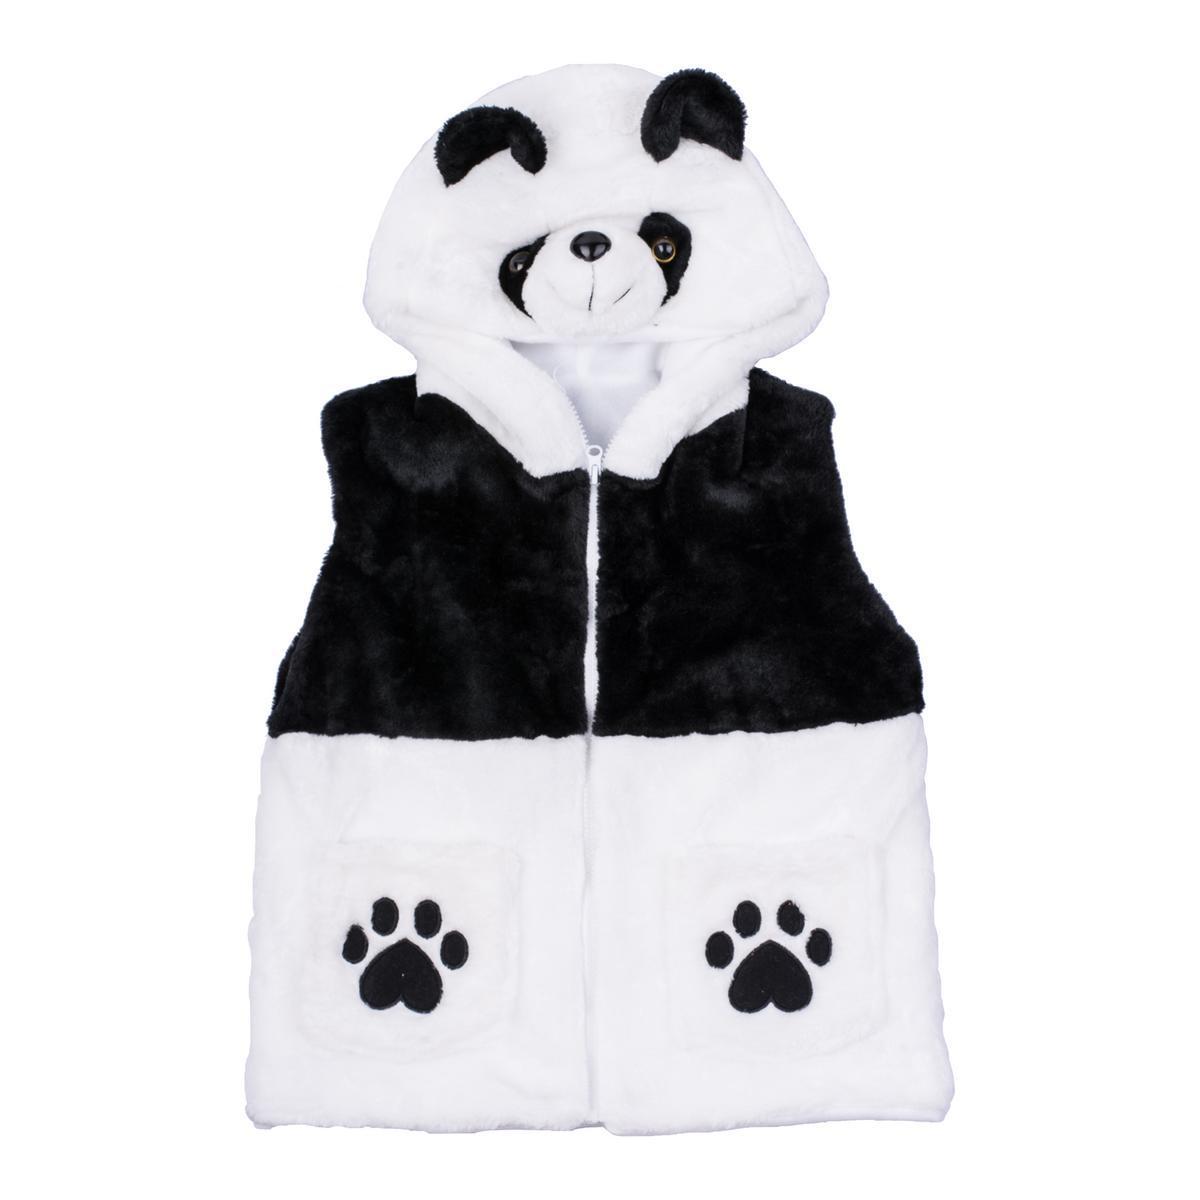 Veste panda avec capuche - 5 à 8 ans - Noir et blanc